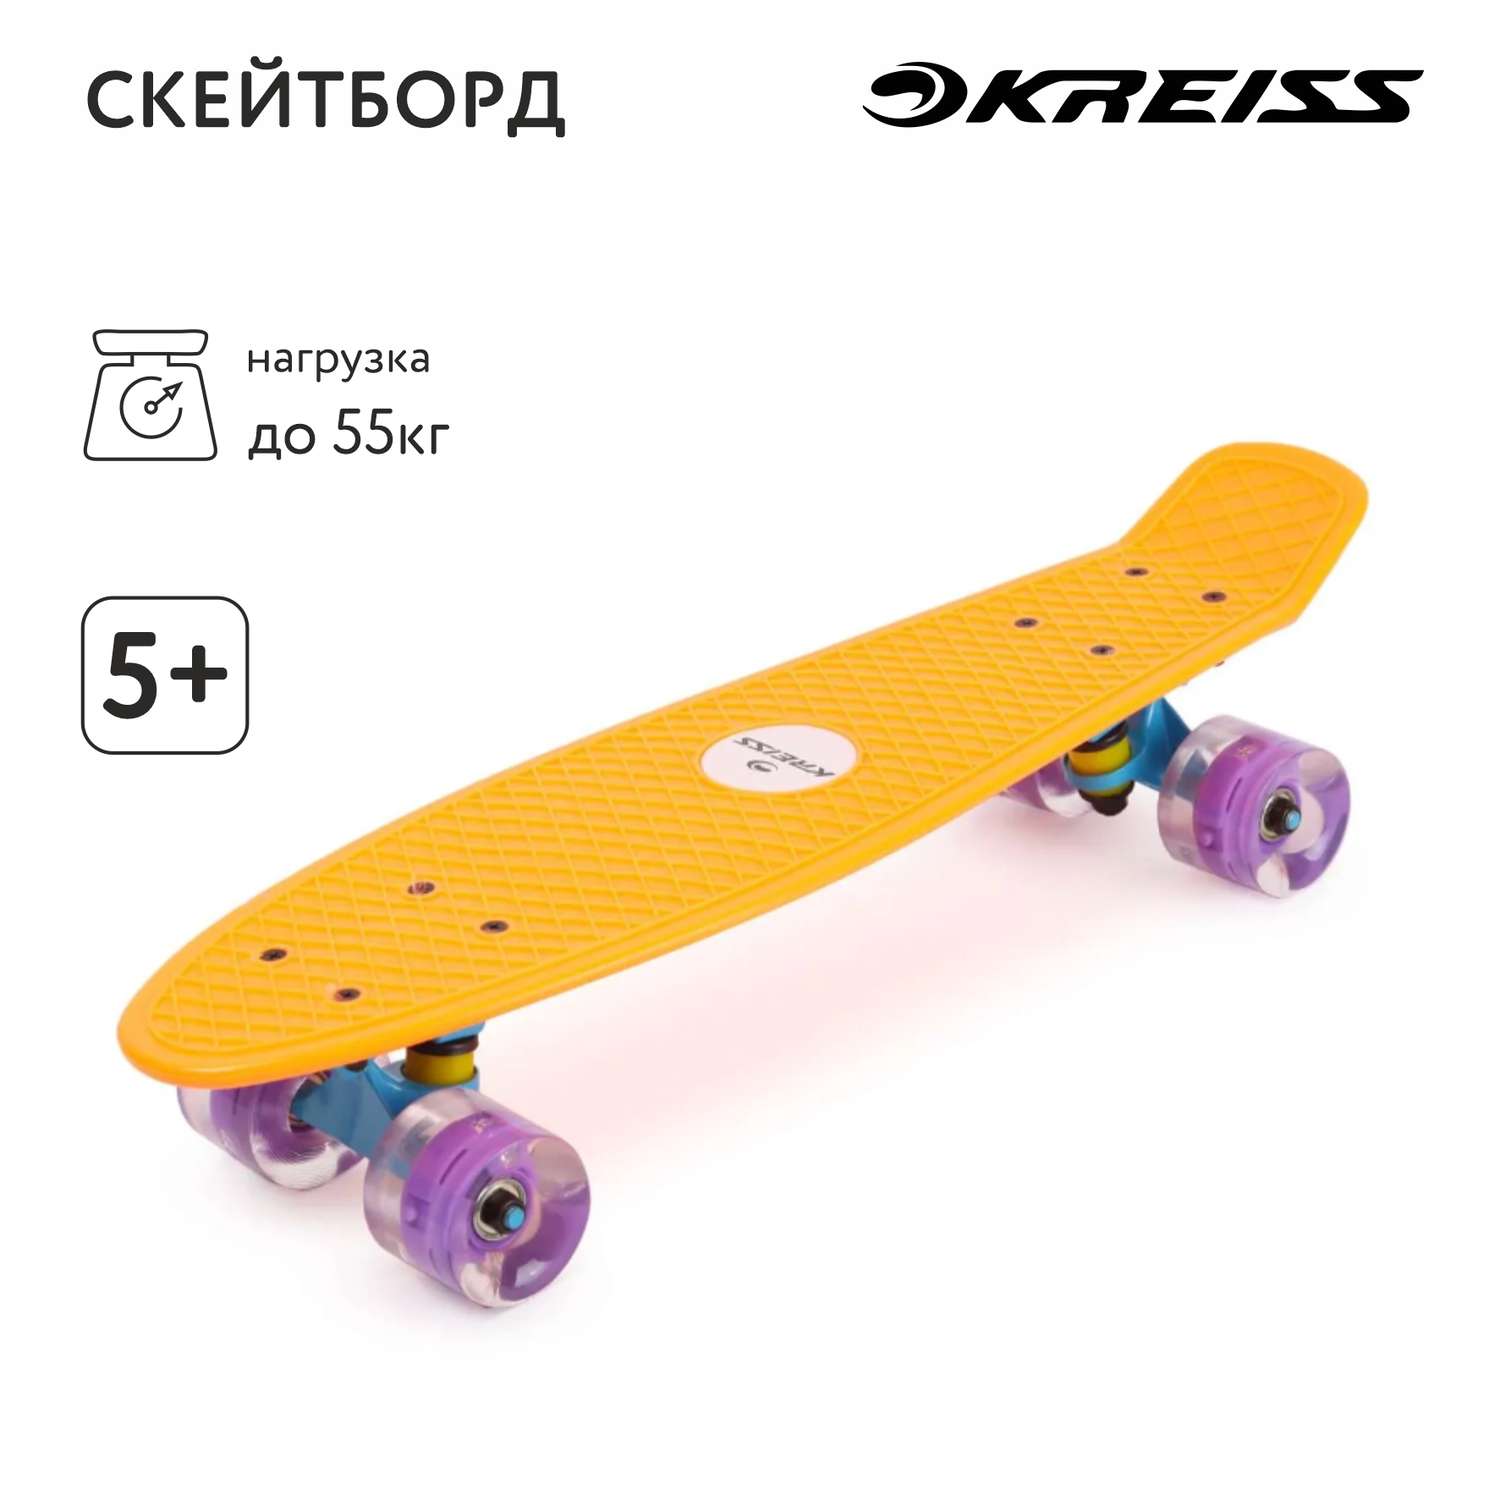 Скейтборд Kreiss Оранжевый HF-SK001-3 - фото 1